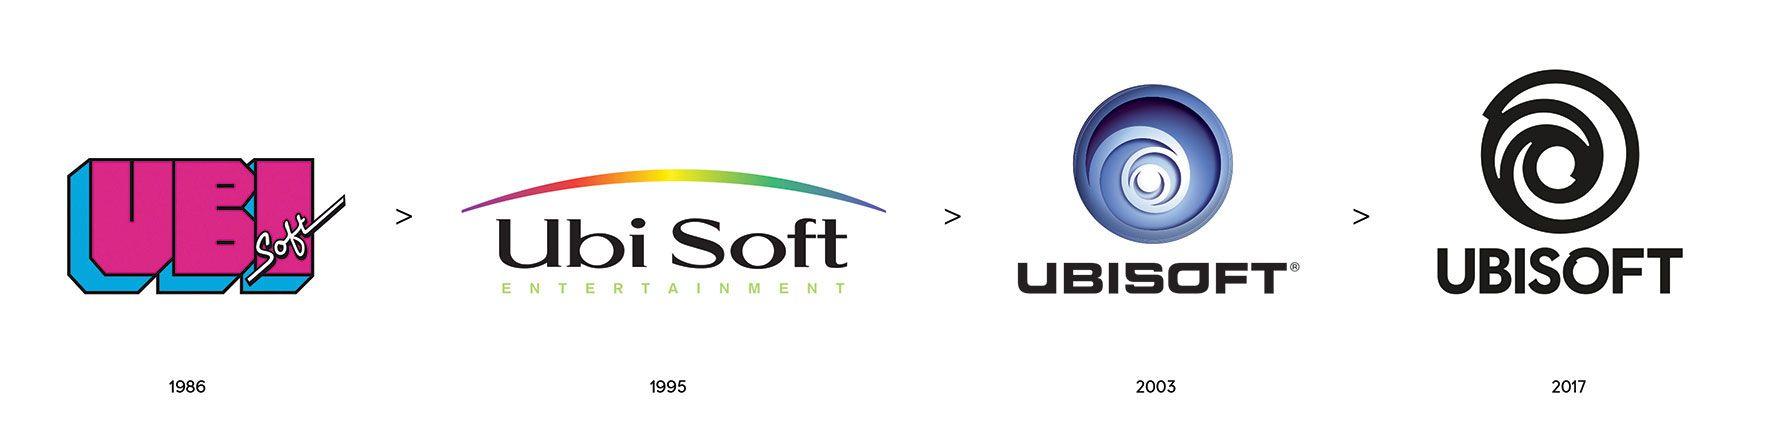 IGN Logo - Ubisoft Unveils New Logo - IGN